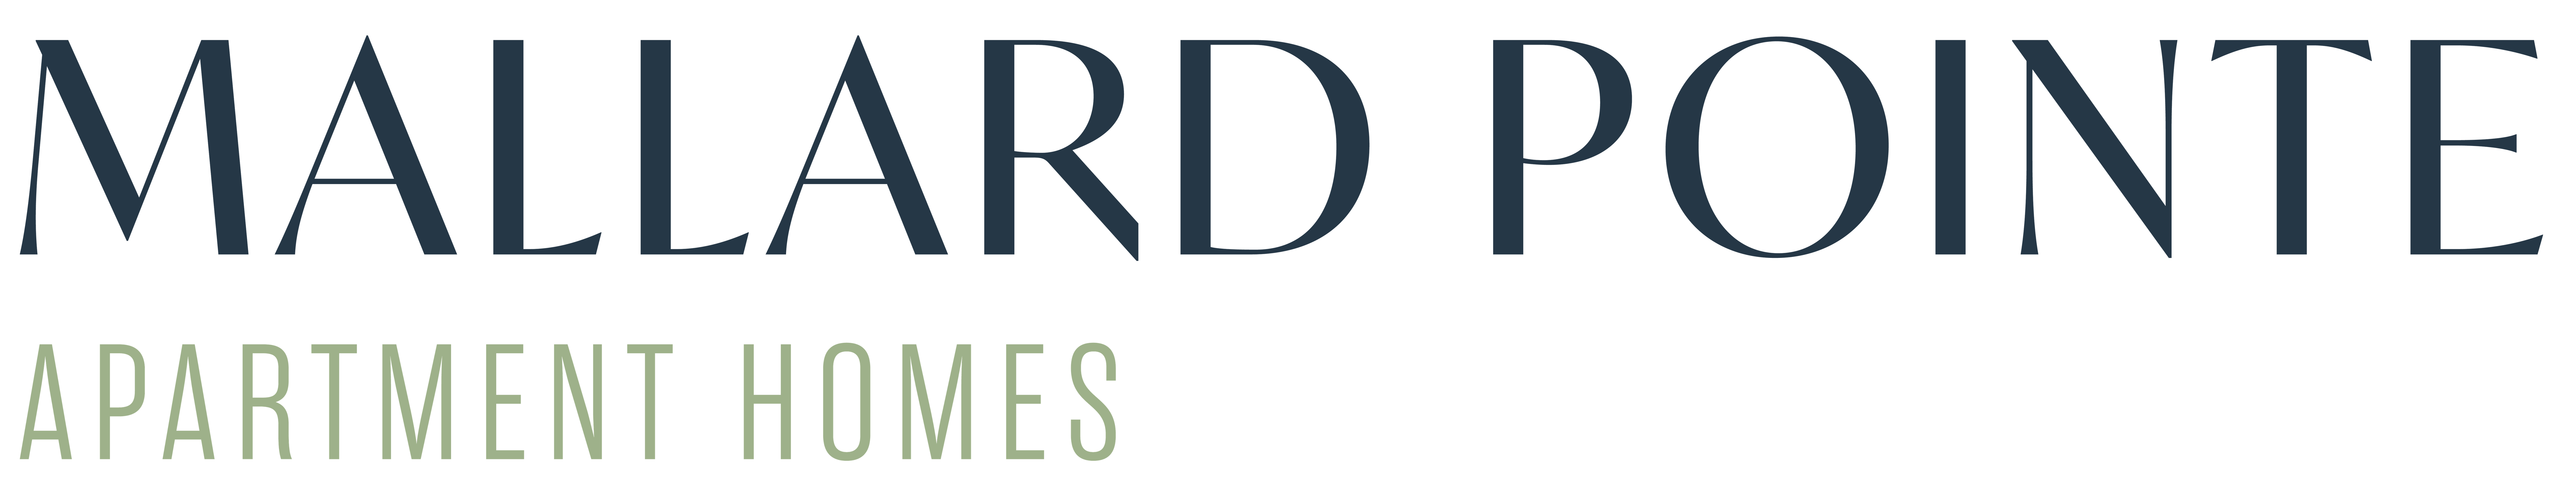 Mallard Pointe logo